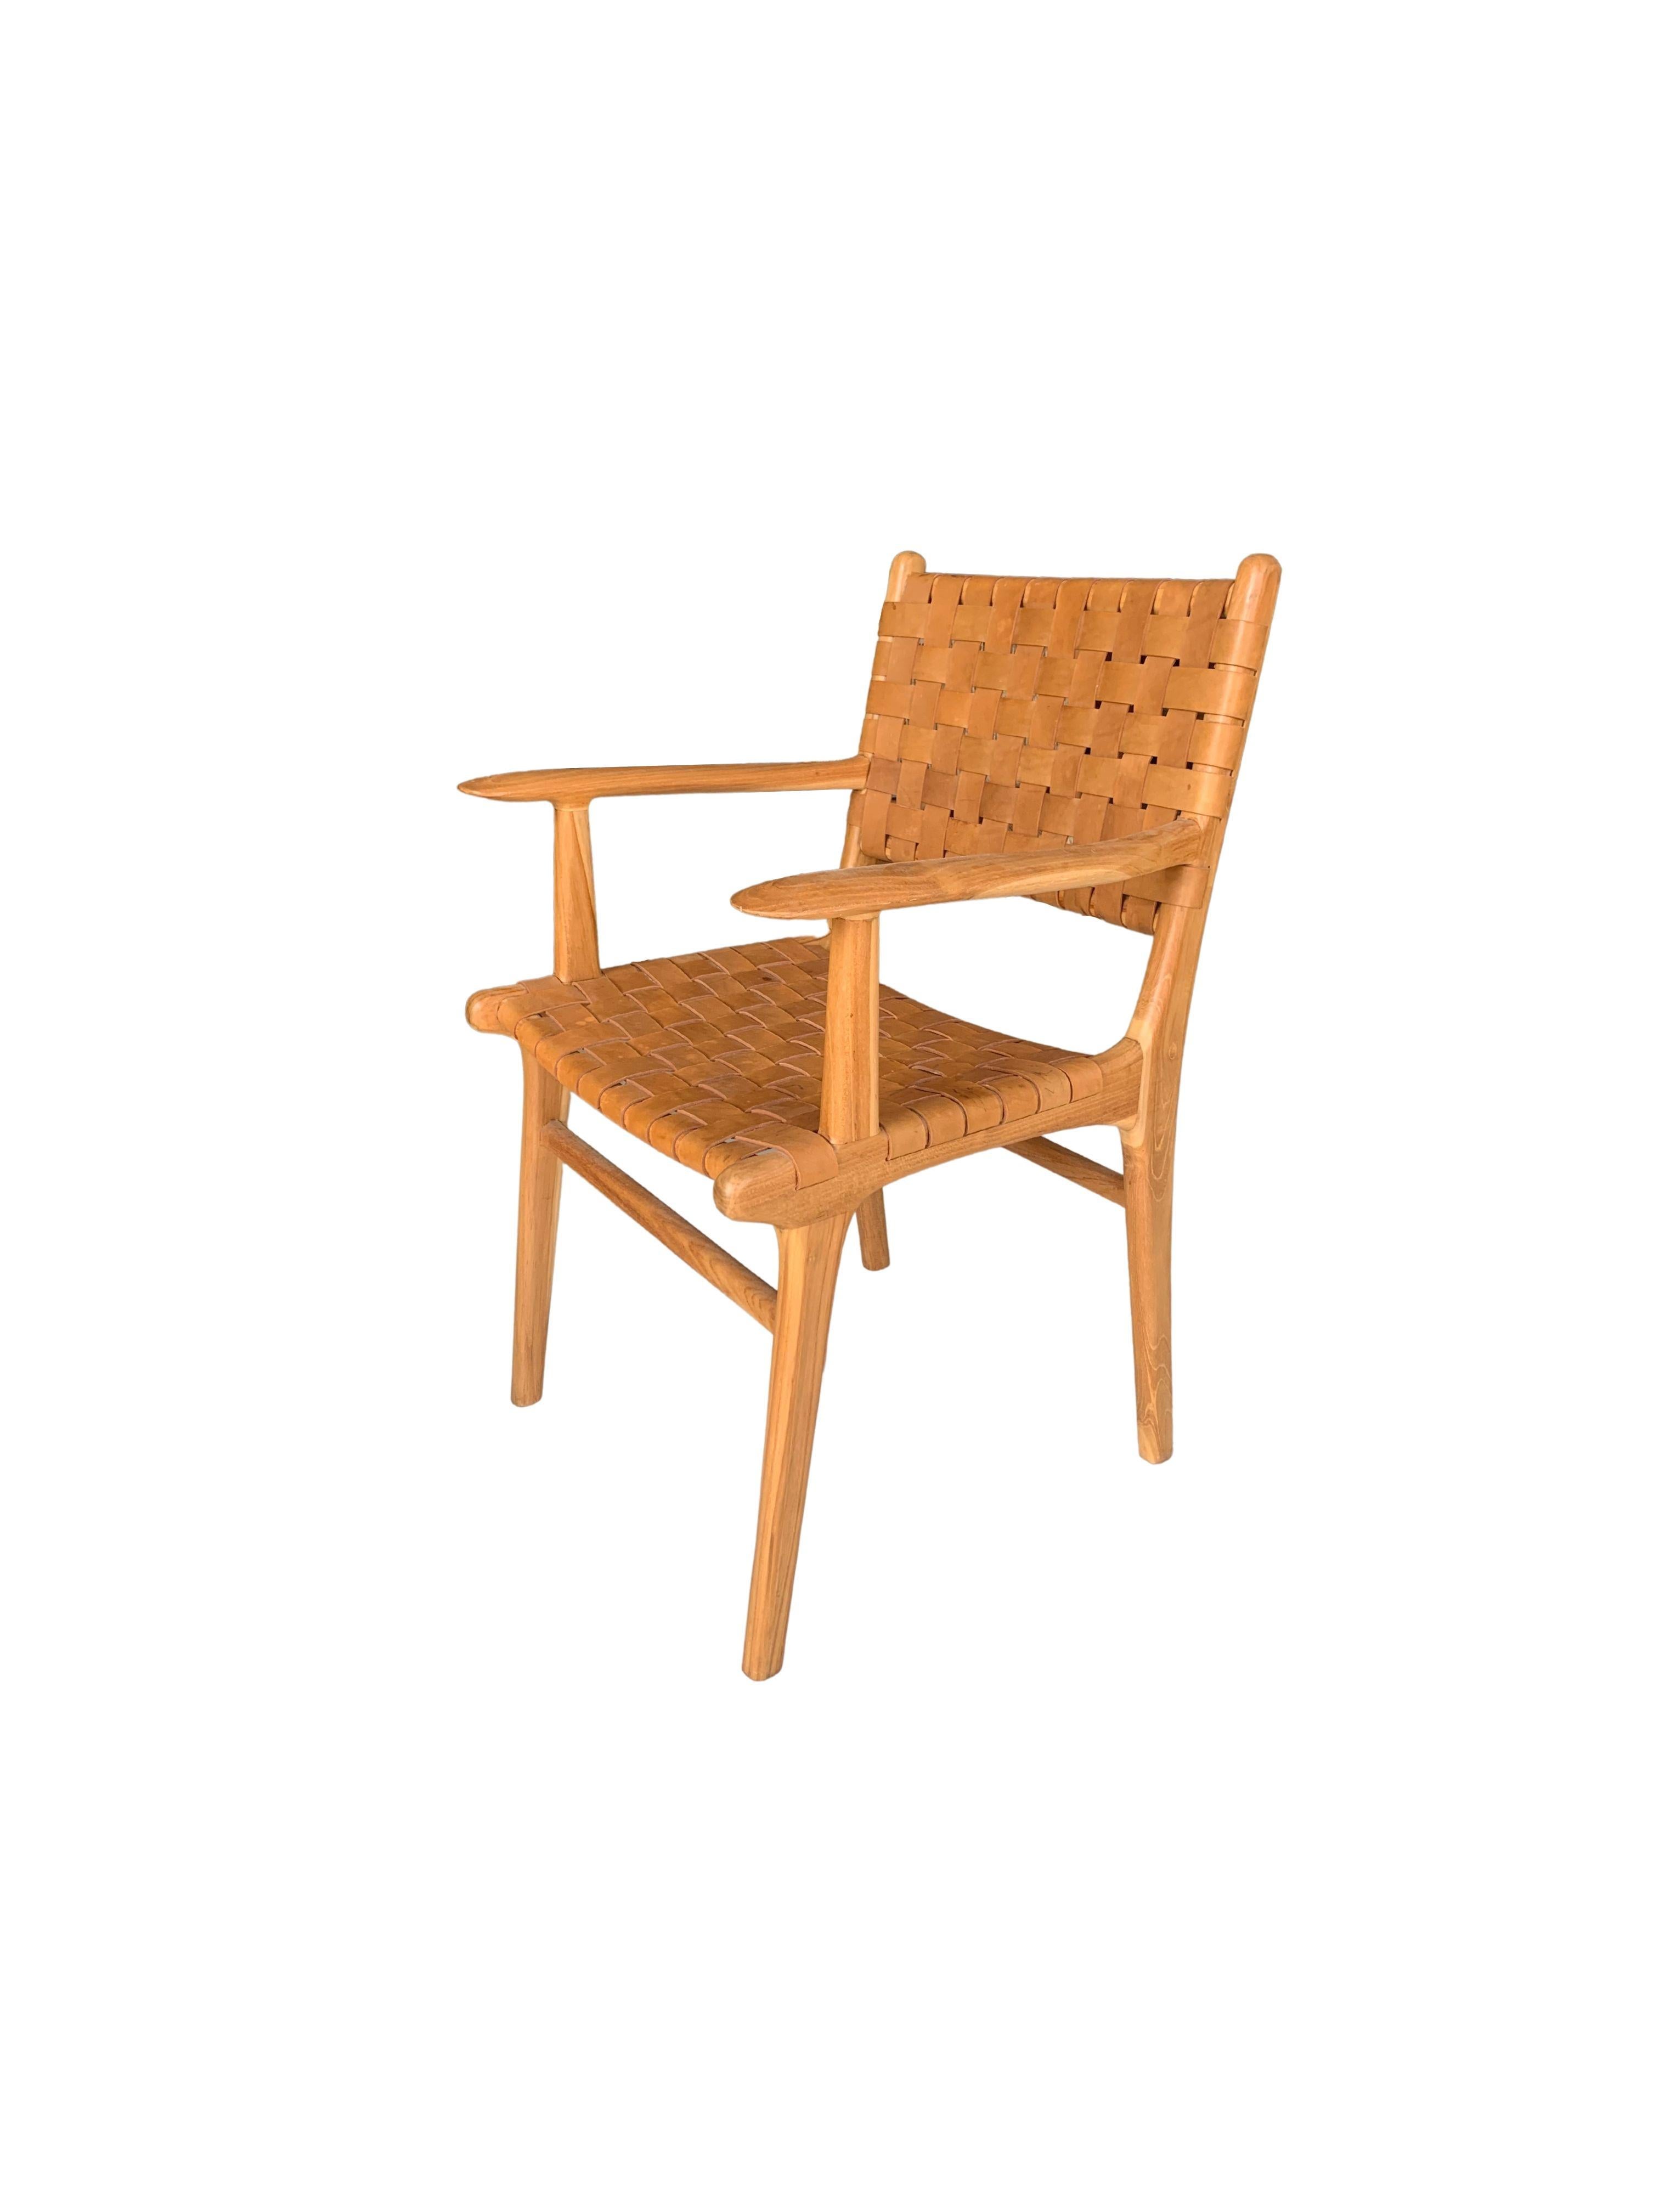 Ein handgefertigter Stuhl mit Teakholzrahmen und geflochtenem Lederband. Diese Stühle werden von lokalen Handwerkern mit einer Holzverbindungstechnik ohne Nägel hergestellt. Sie weisen eine dezente Holzstruktur auf und sind robust und